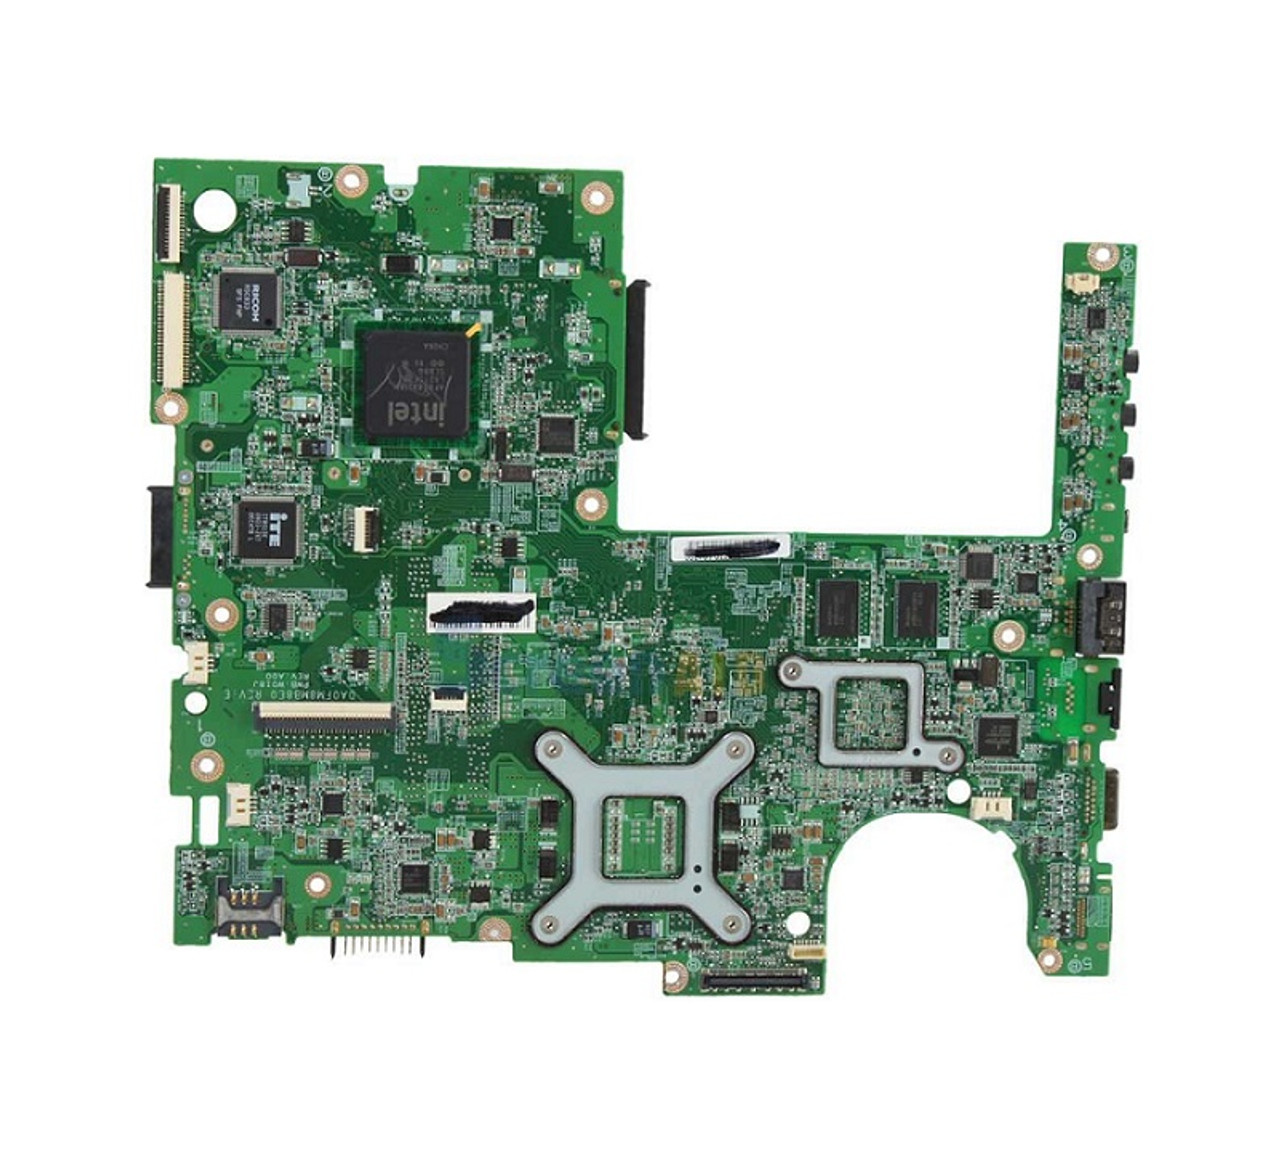 580240-001 - HP G60 Compaq Cq50 Intel Laptop Board (Refurbished)